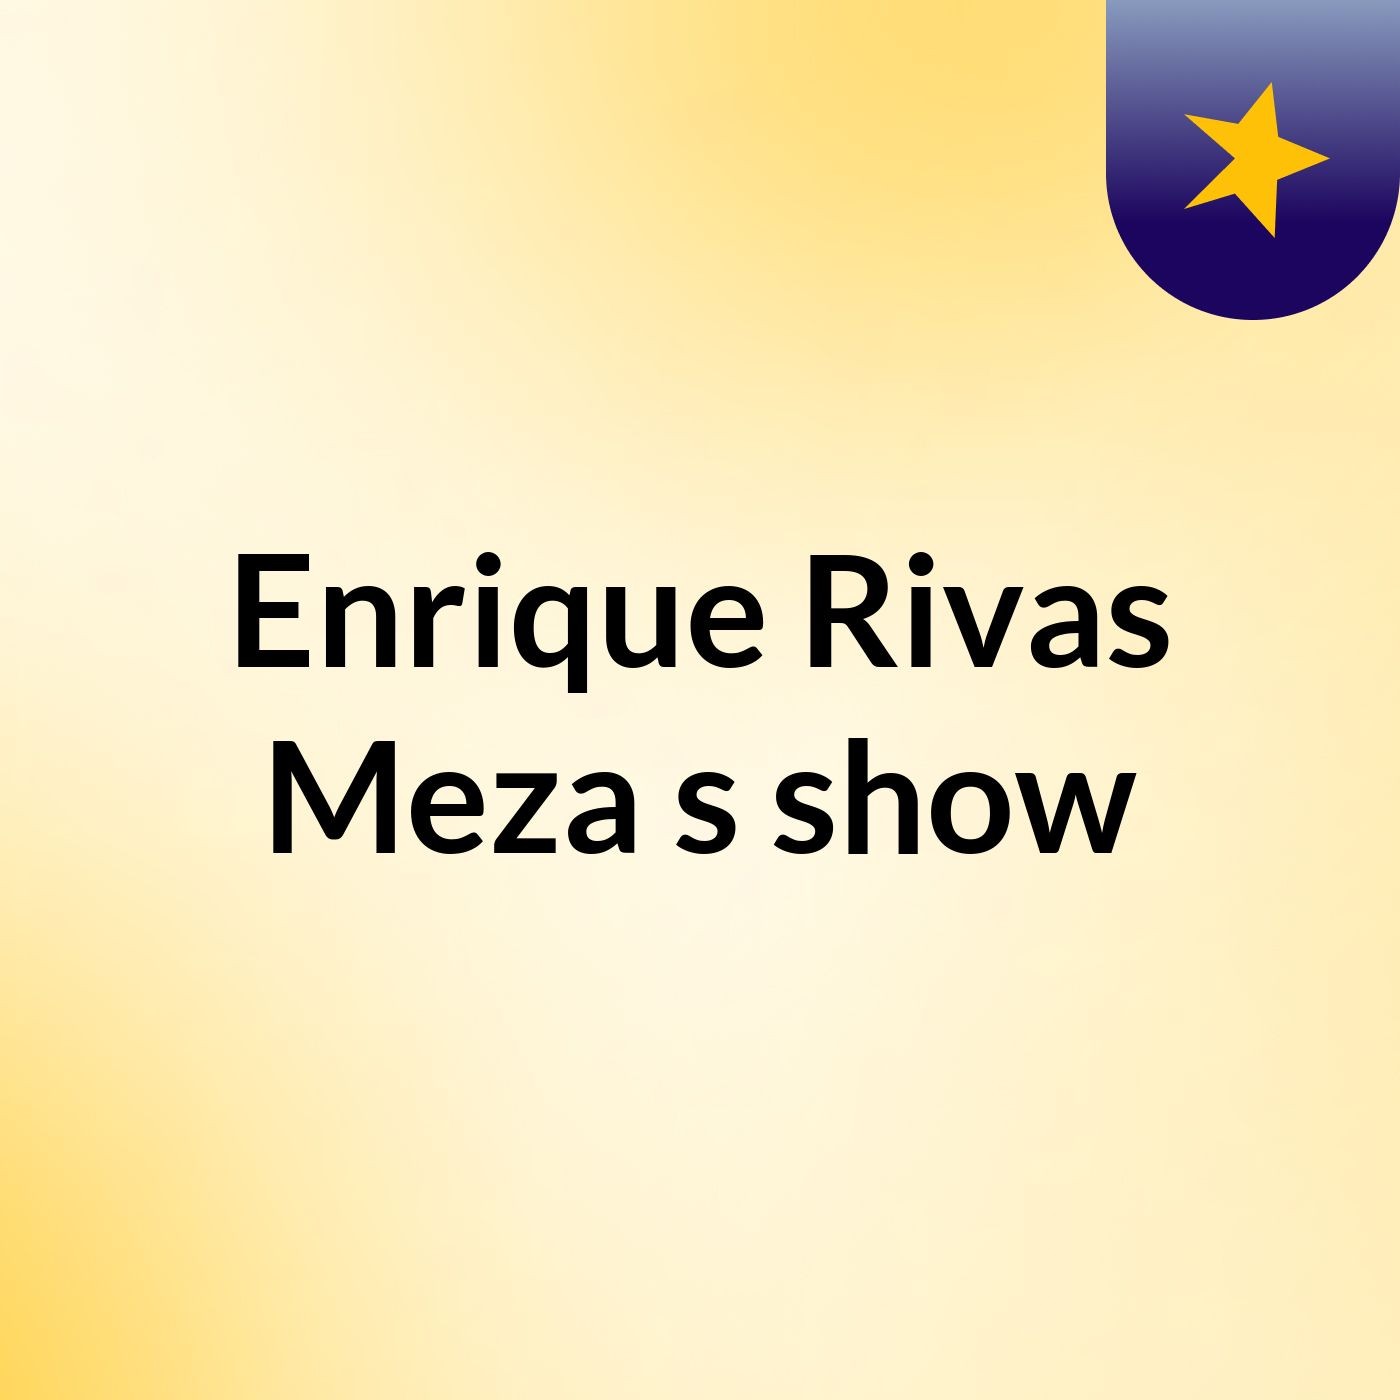 Enrique Rivas Meza's show